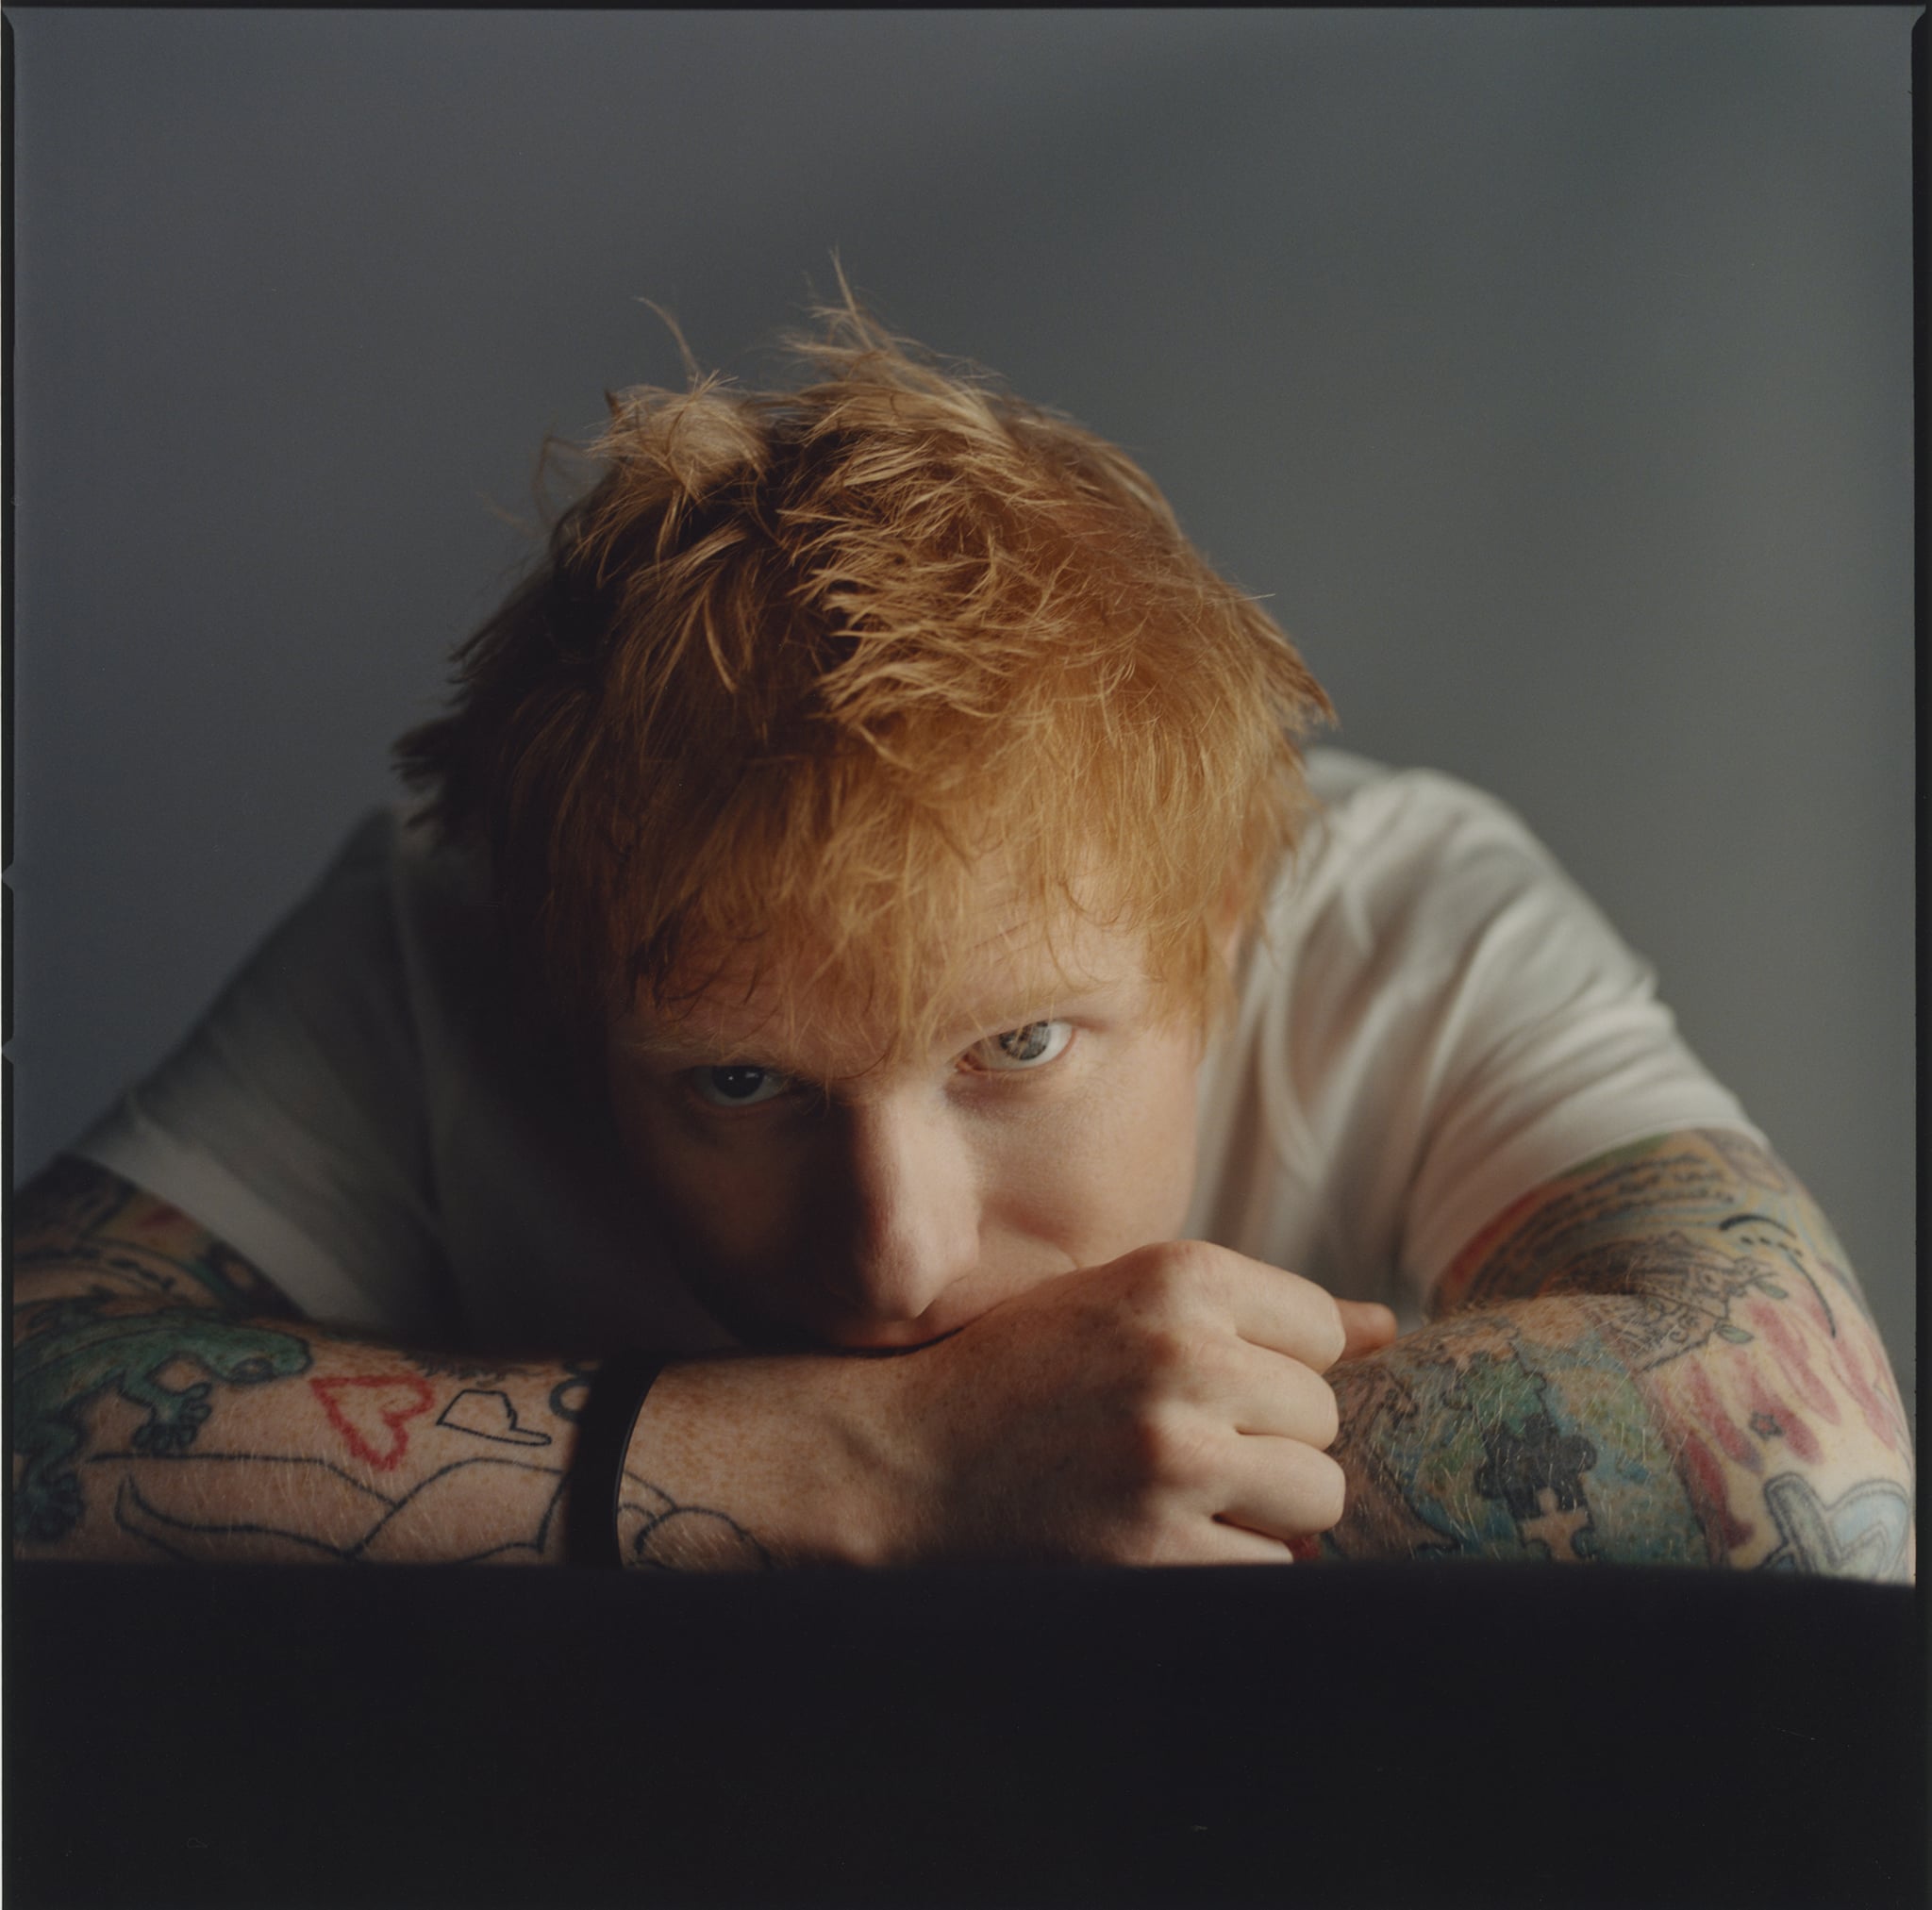 Ninguém consegue derrubar Ed Sheeran no Reino Unido